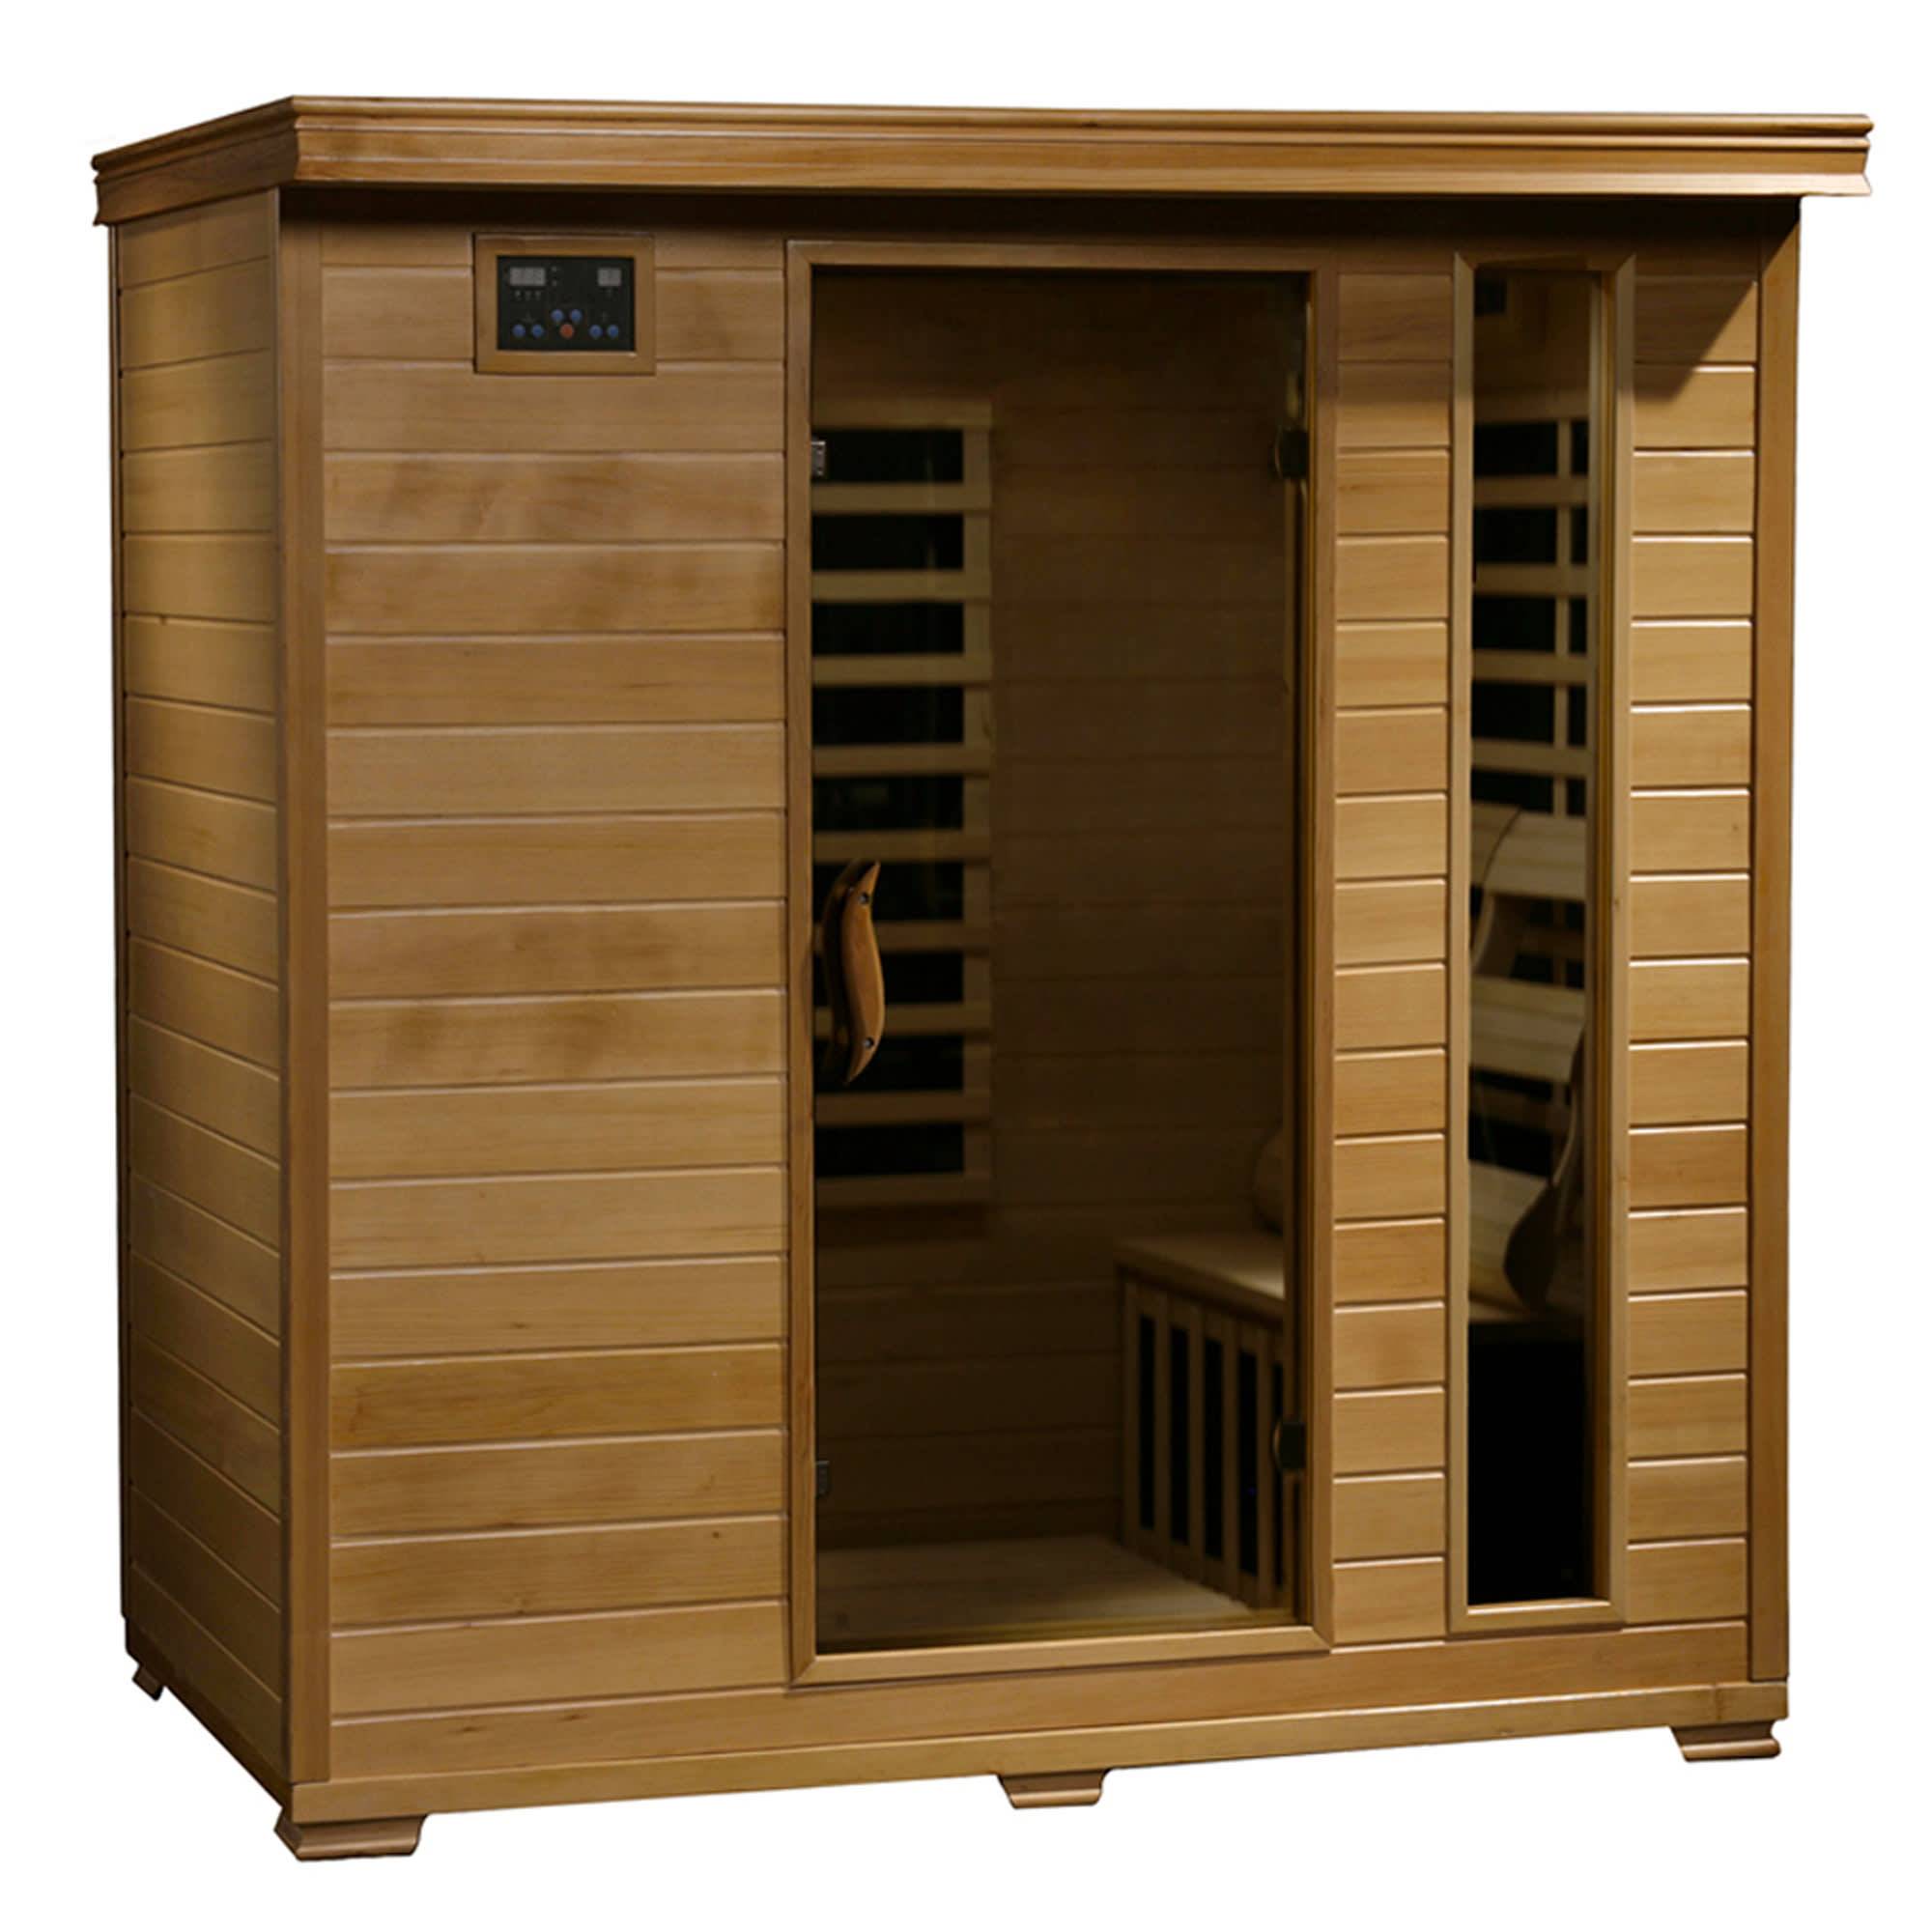 Monticello - 4 Person Carbon Heater Heatwave Infrared Home Sauna